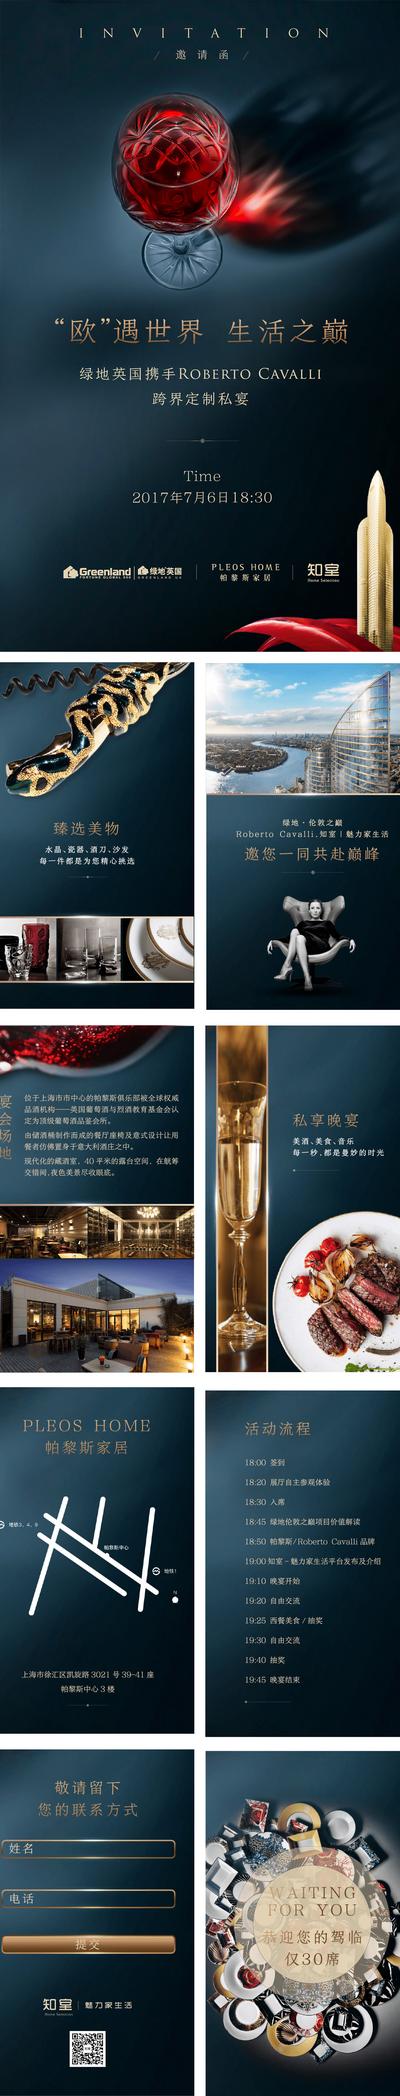 南门网 专题设计 H5 房地产 活动 邀请函 私宴 红酒杯 晚宴 酒会 宴会